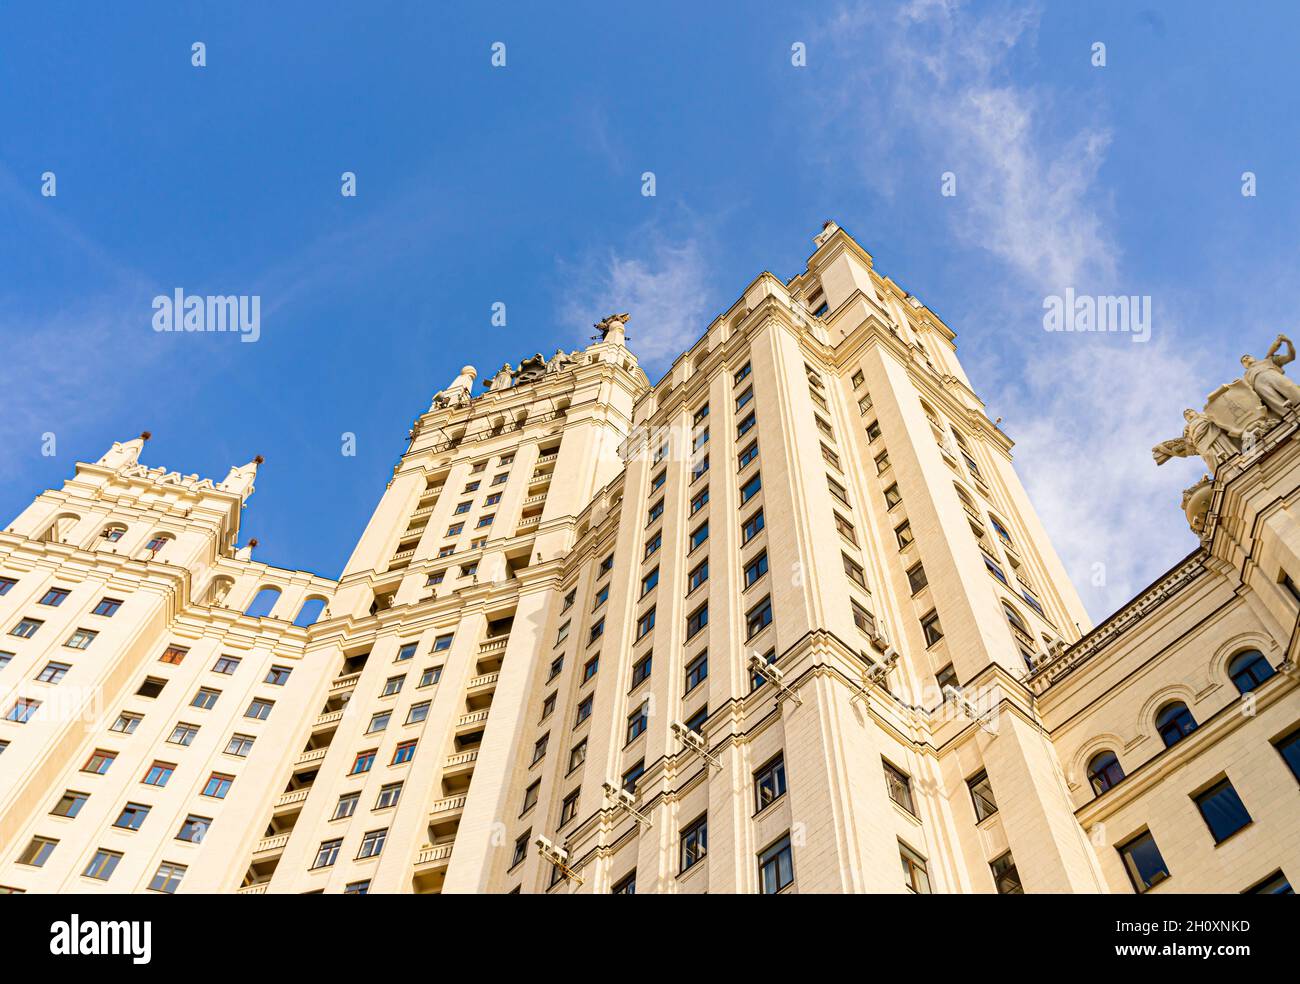 Detail des Kotelnicheskaya-Ufergebäudes, stalinistischer sozialistischer Klassizismus, Moskau, Russland Stockfoto